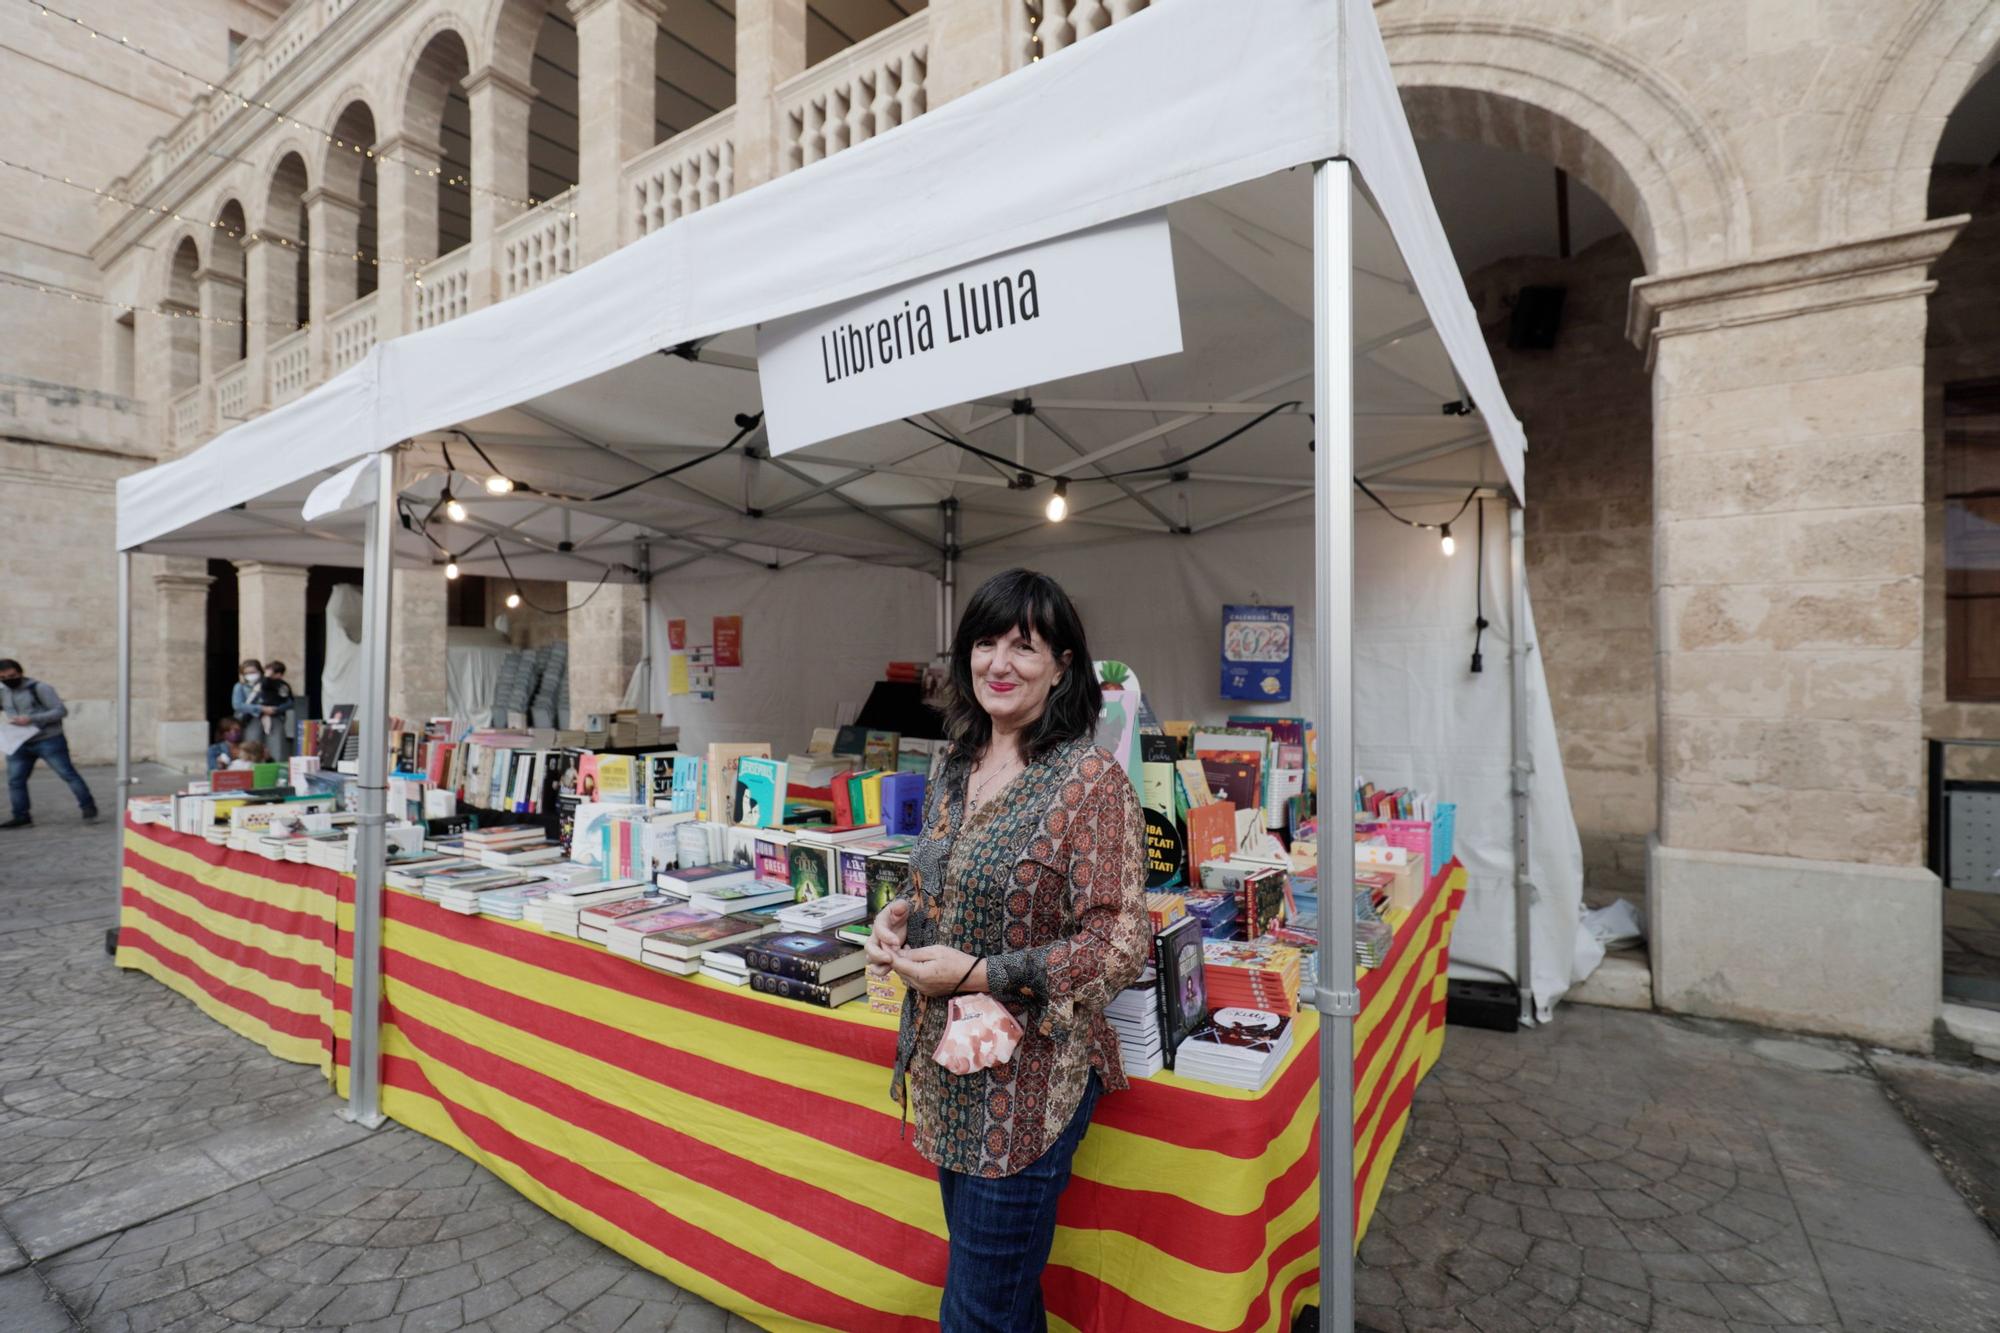 Arranca la 32 Setmana del Llibre en Català en La Misericòrdia de Palma